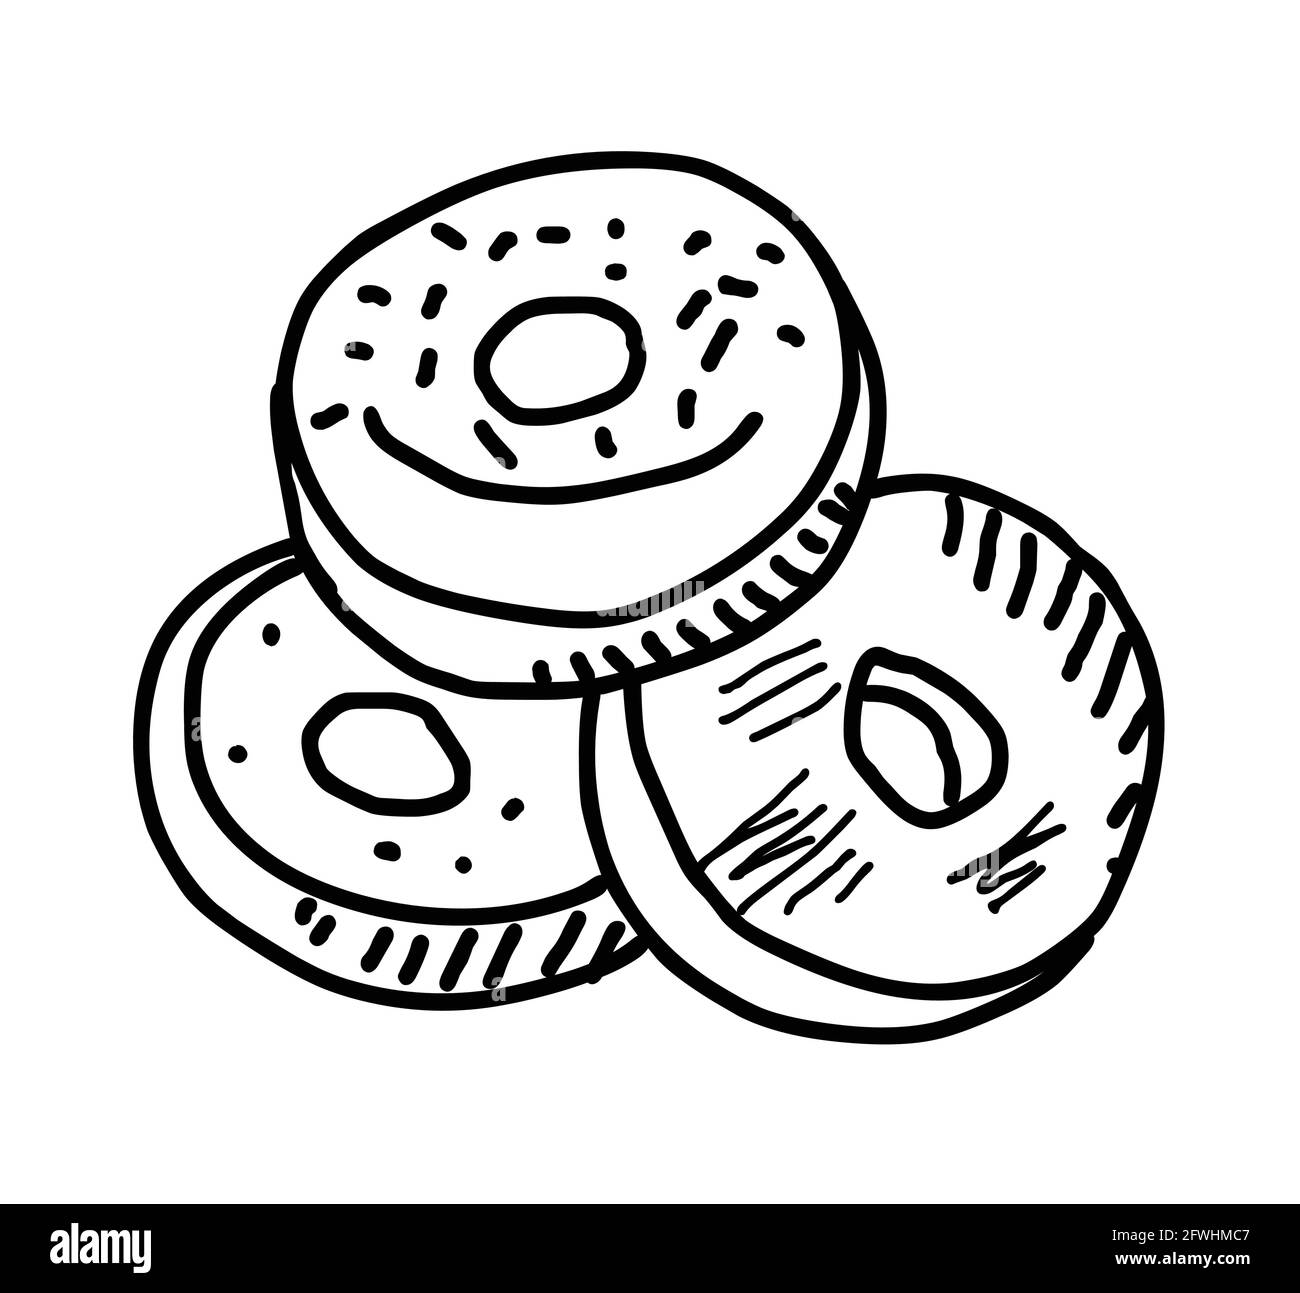 Handgezeichneter Illustrationsvektor mit Donuts auf weißem Hintergrund Stock Vektor